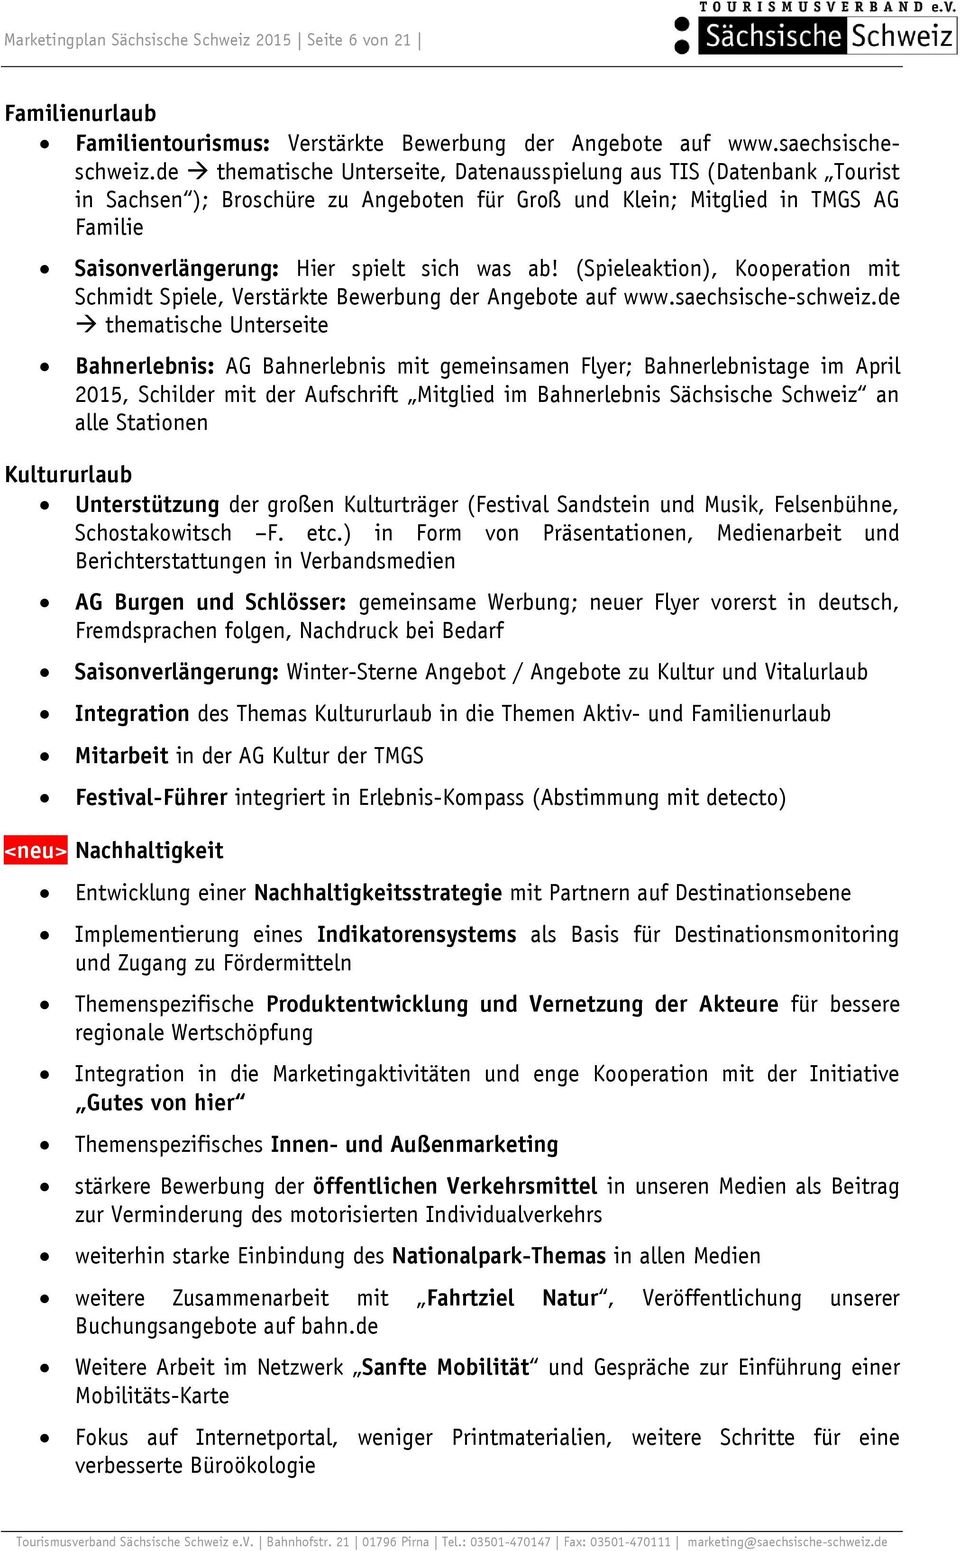 (Spieleaktion), Kooperation mit Schmidt Spiele, Verstärkte Bewerbung der Angebote auf www.saechsische-schweiz.